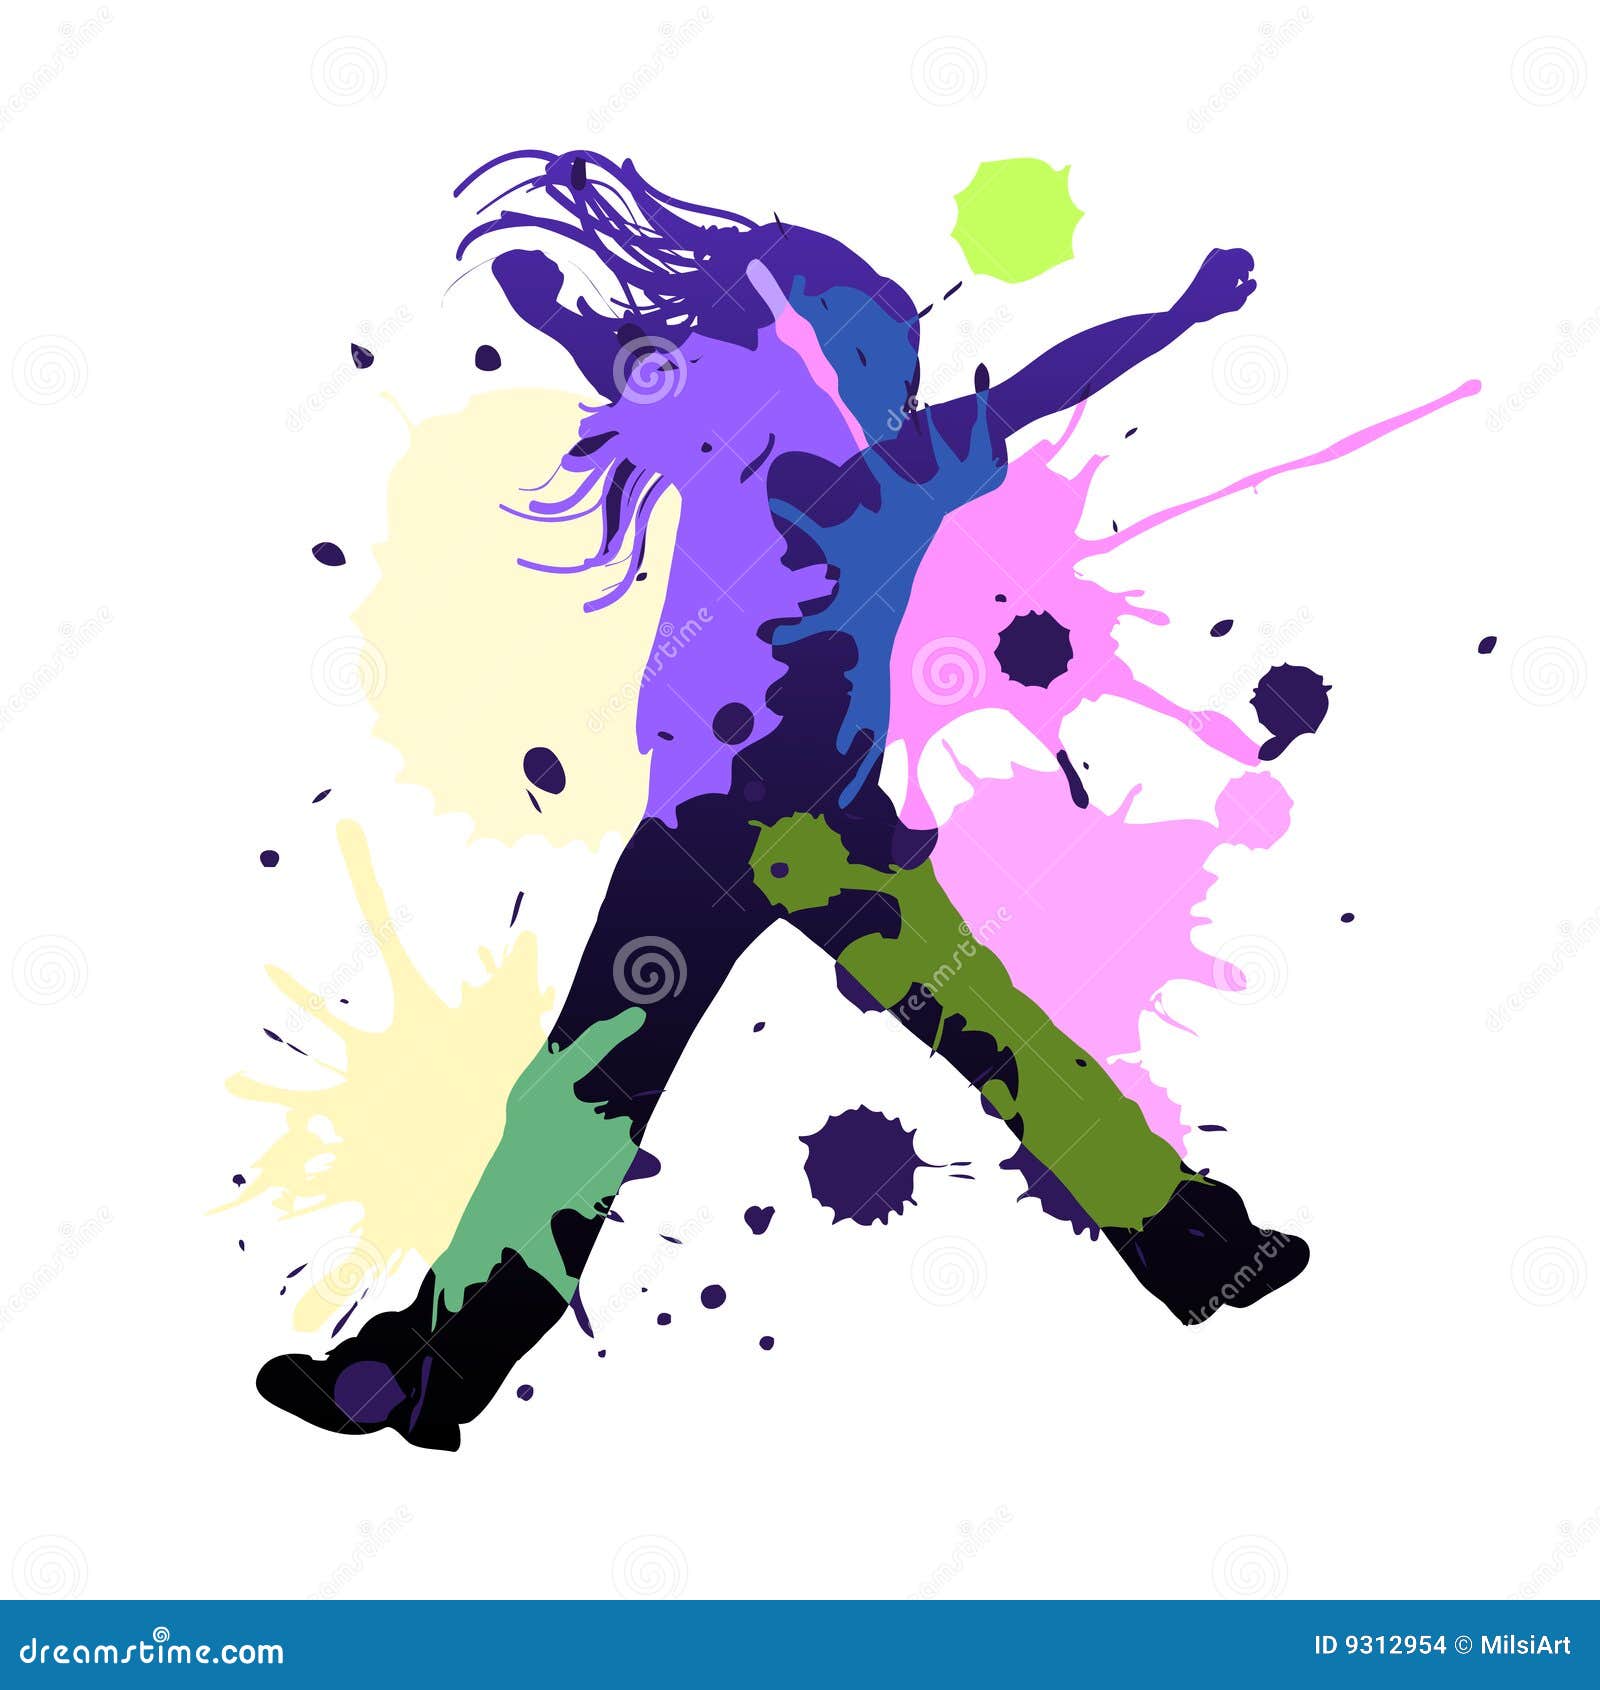 Splash dance stock vector. Illustration of party, girl - 9312954